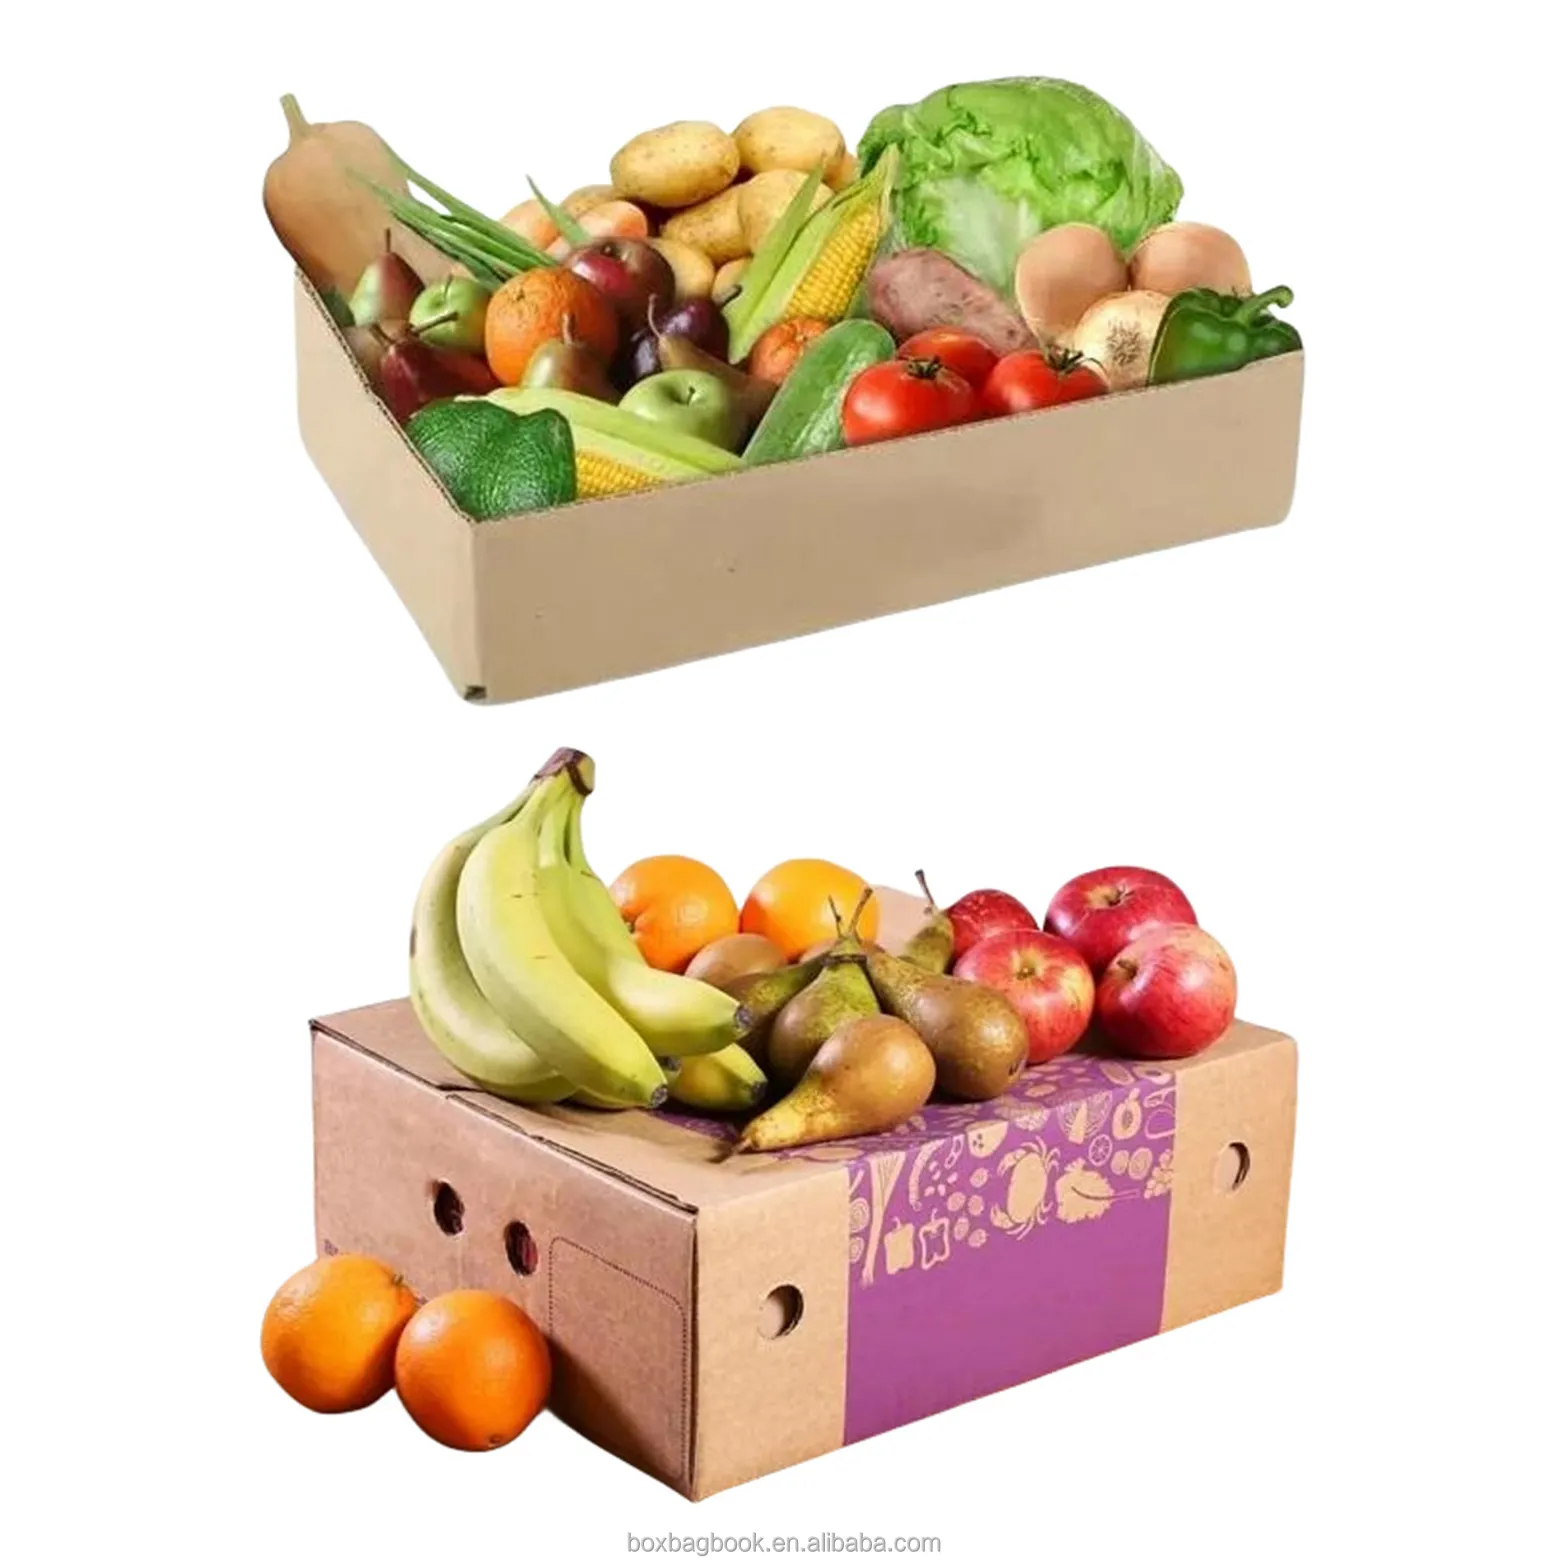 กระดาษแข็งซันไชน์กล่องกระดาษกล่องผลไม้แอปเปิ้ลกล้วยมะม่วงกล่องใส่ผลไม้แข็งทนทาน